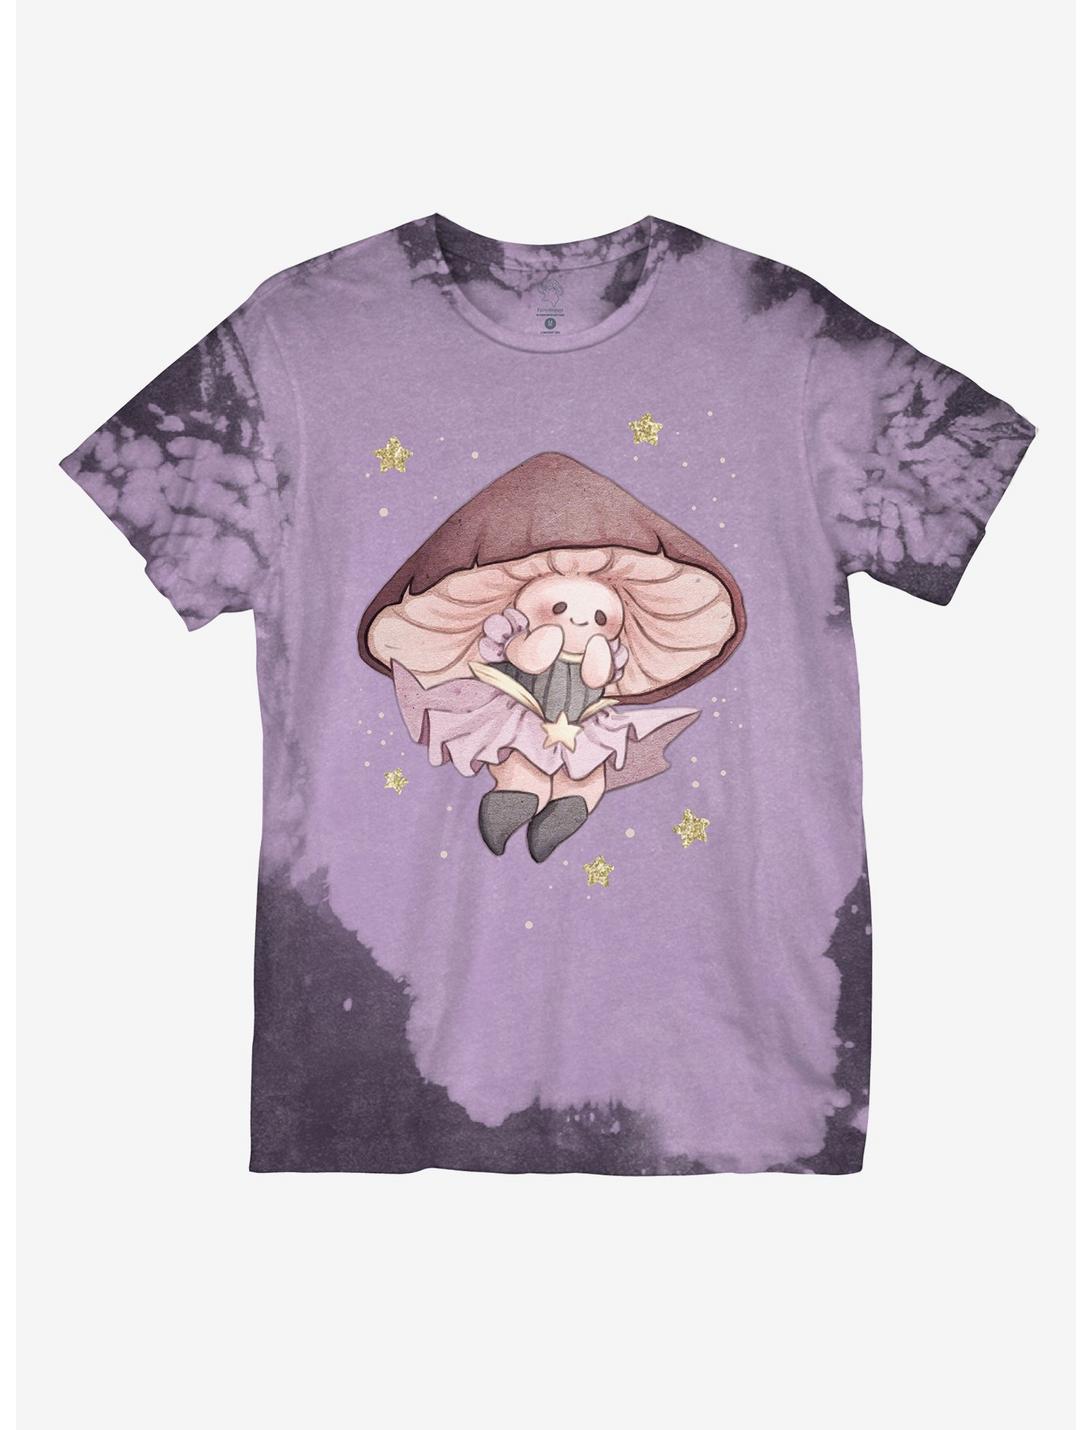 Fairy Mushroom Boyfriend Fit Girls T-Shirt By Fairydrop, MULTI, hi-res